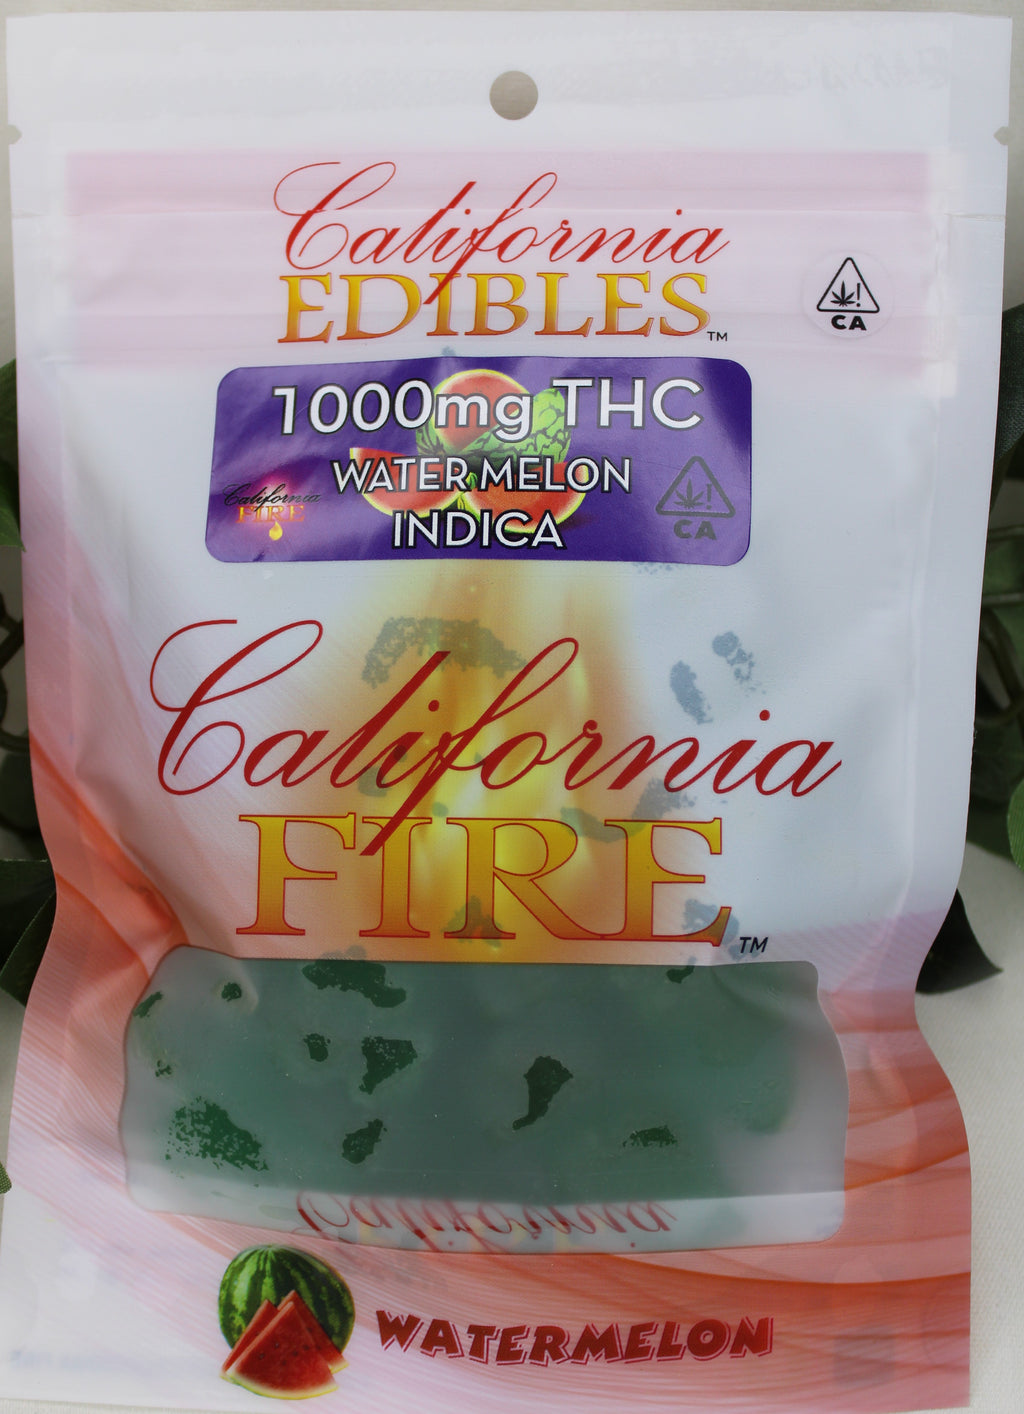 California Fire 1000mg "Watermelon" THC Edible